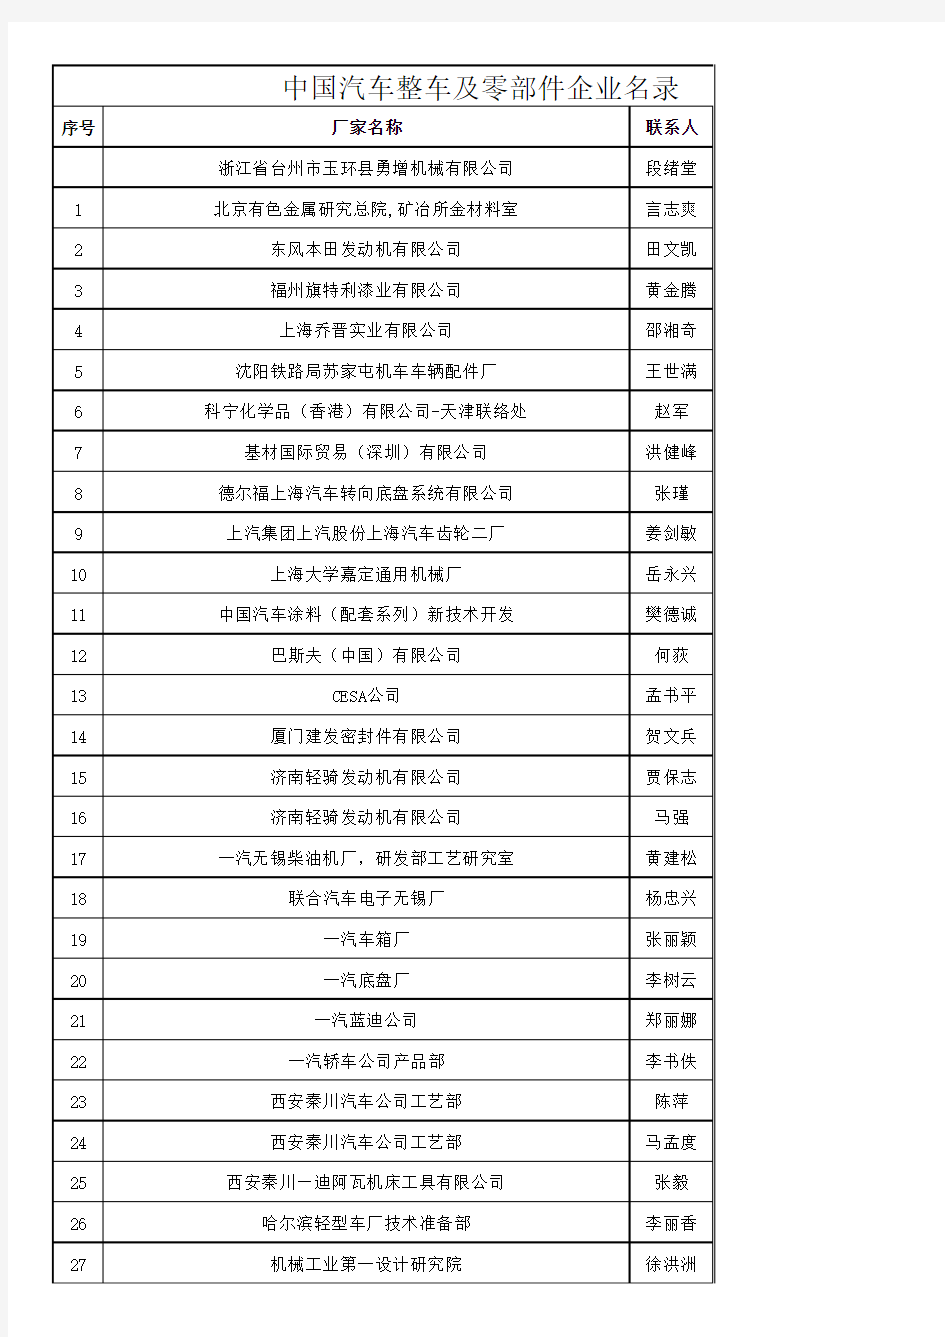 最新版中国汽车整车及零部件企业名录